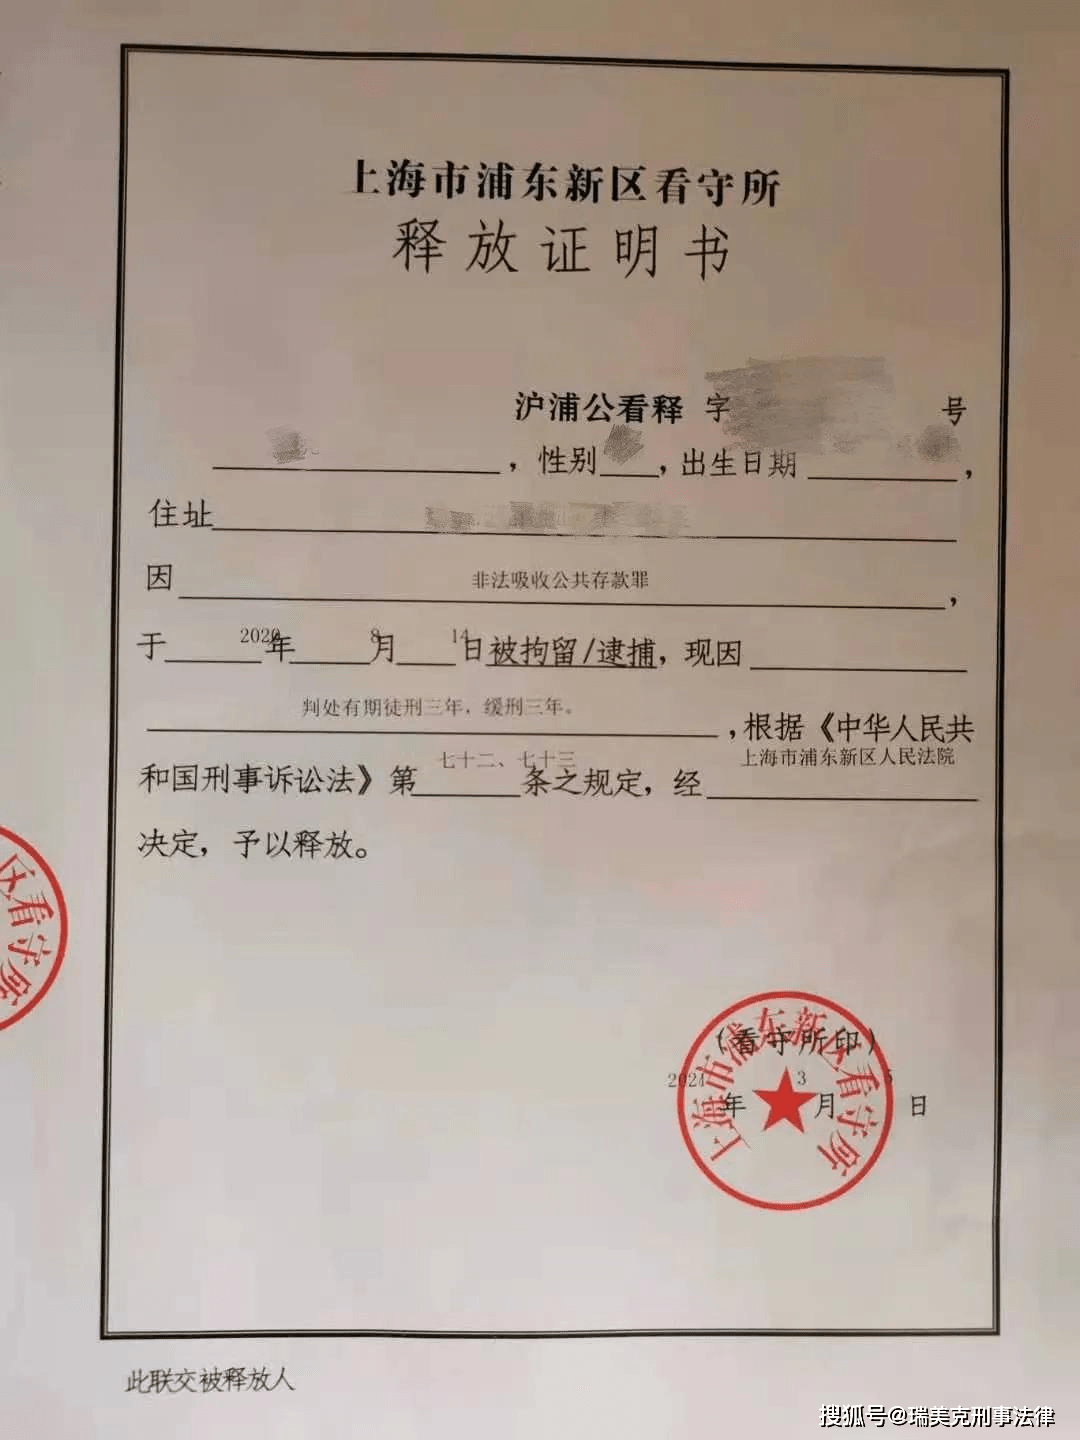 重磅 本所成功为涉嫌非法吸收公众存款的当事人争取缓刑 上海刑事律师